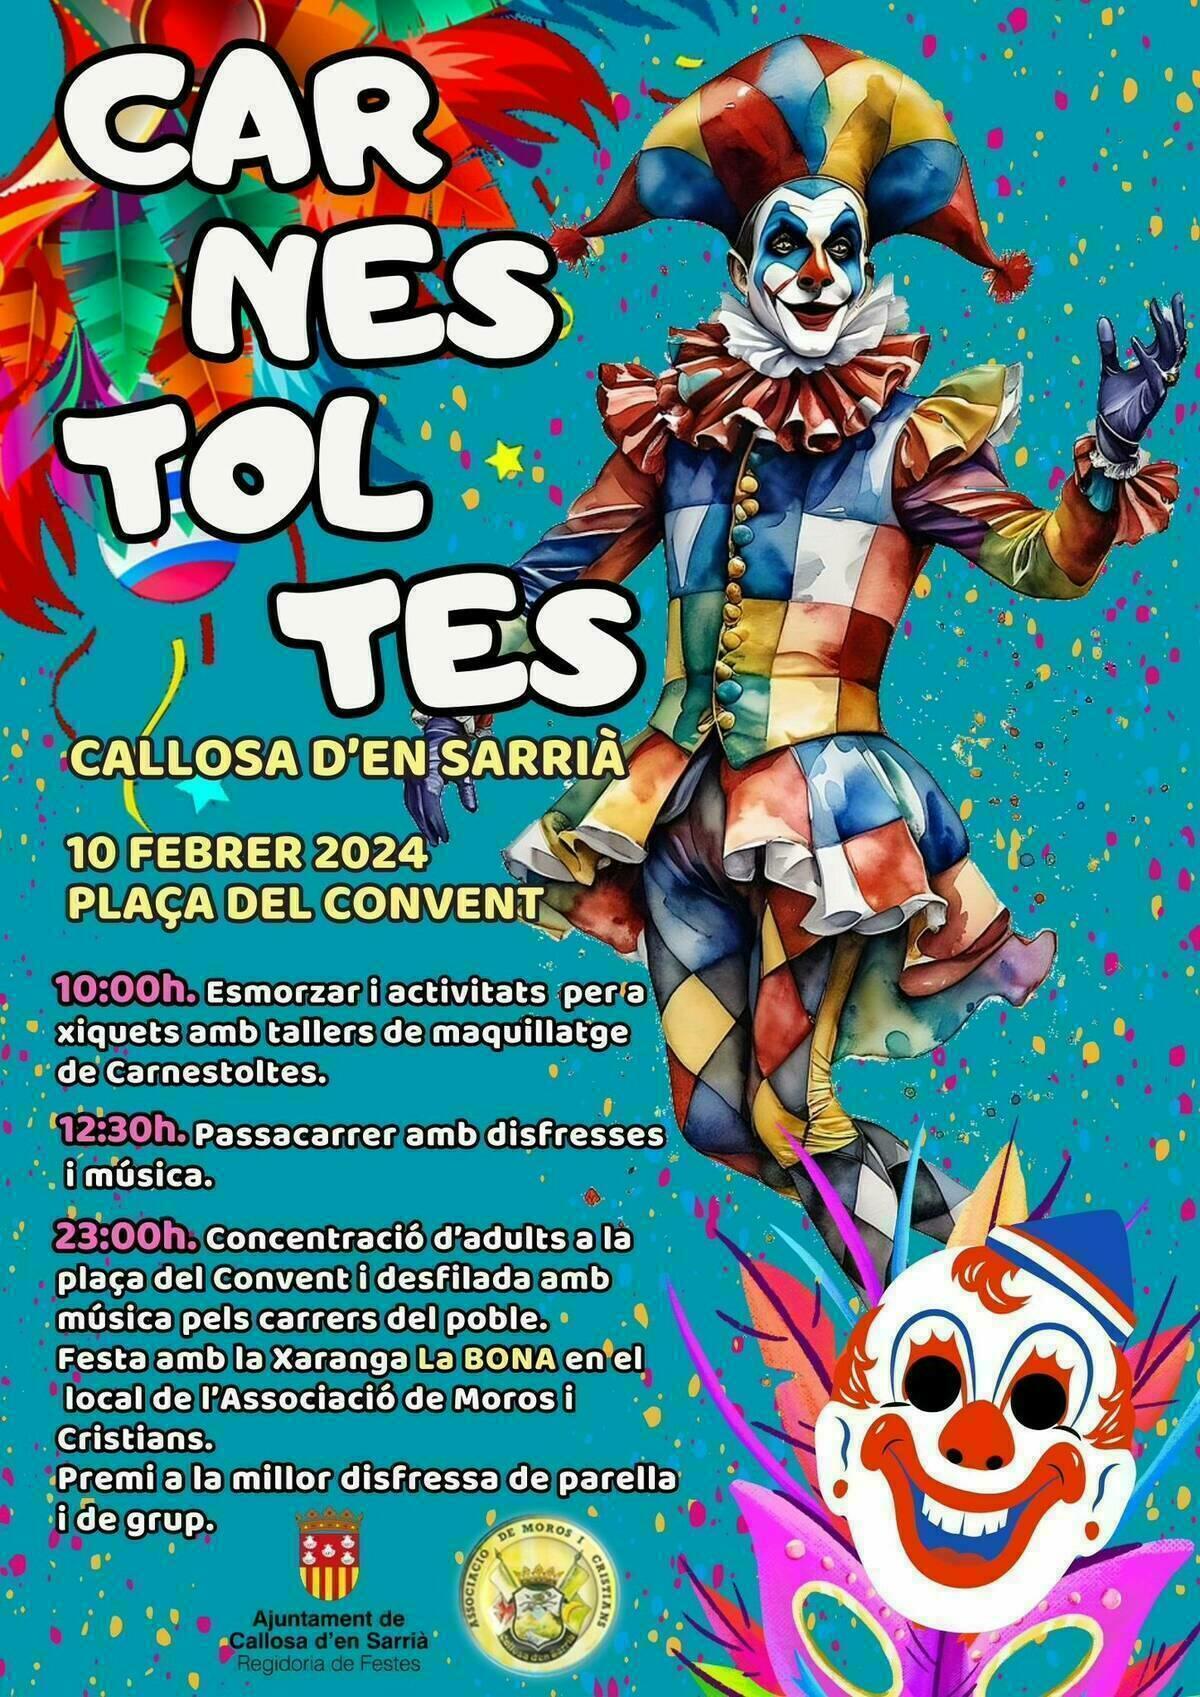 Todo preparado en Callosa d’en Sarrià para celebrar los Carnavales 2024